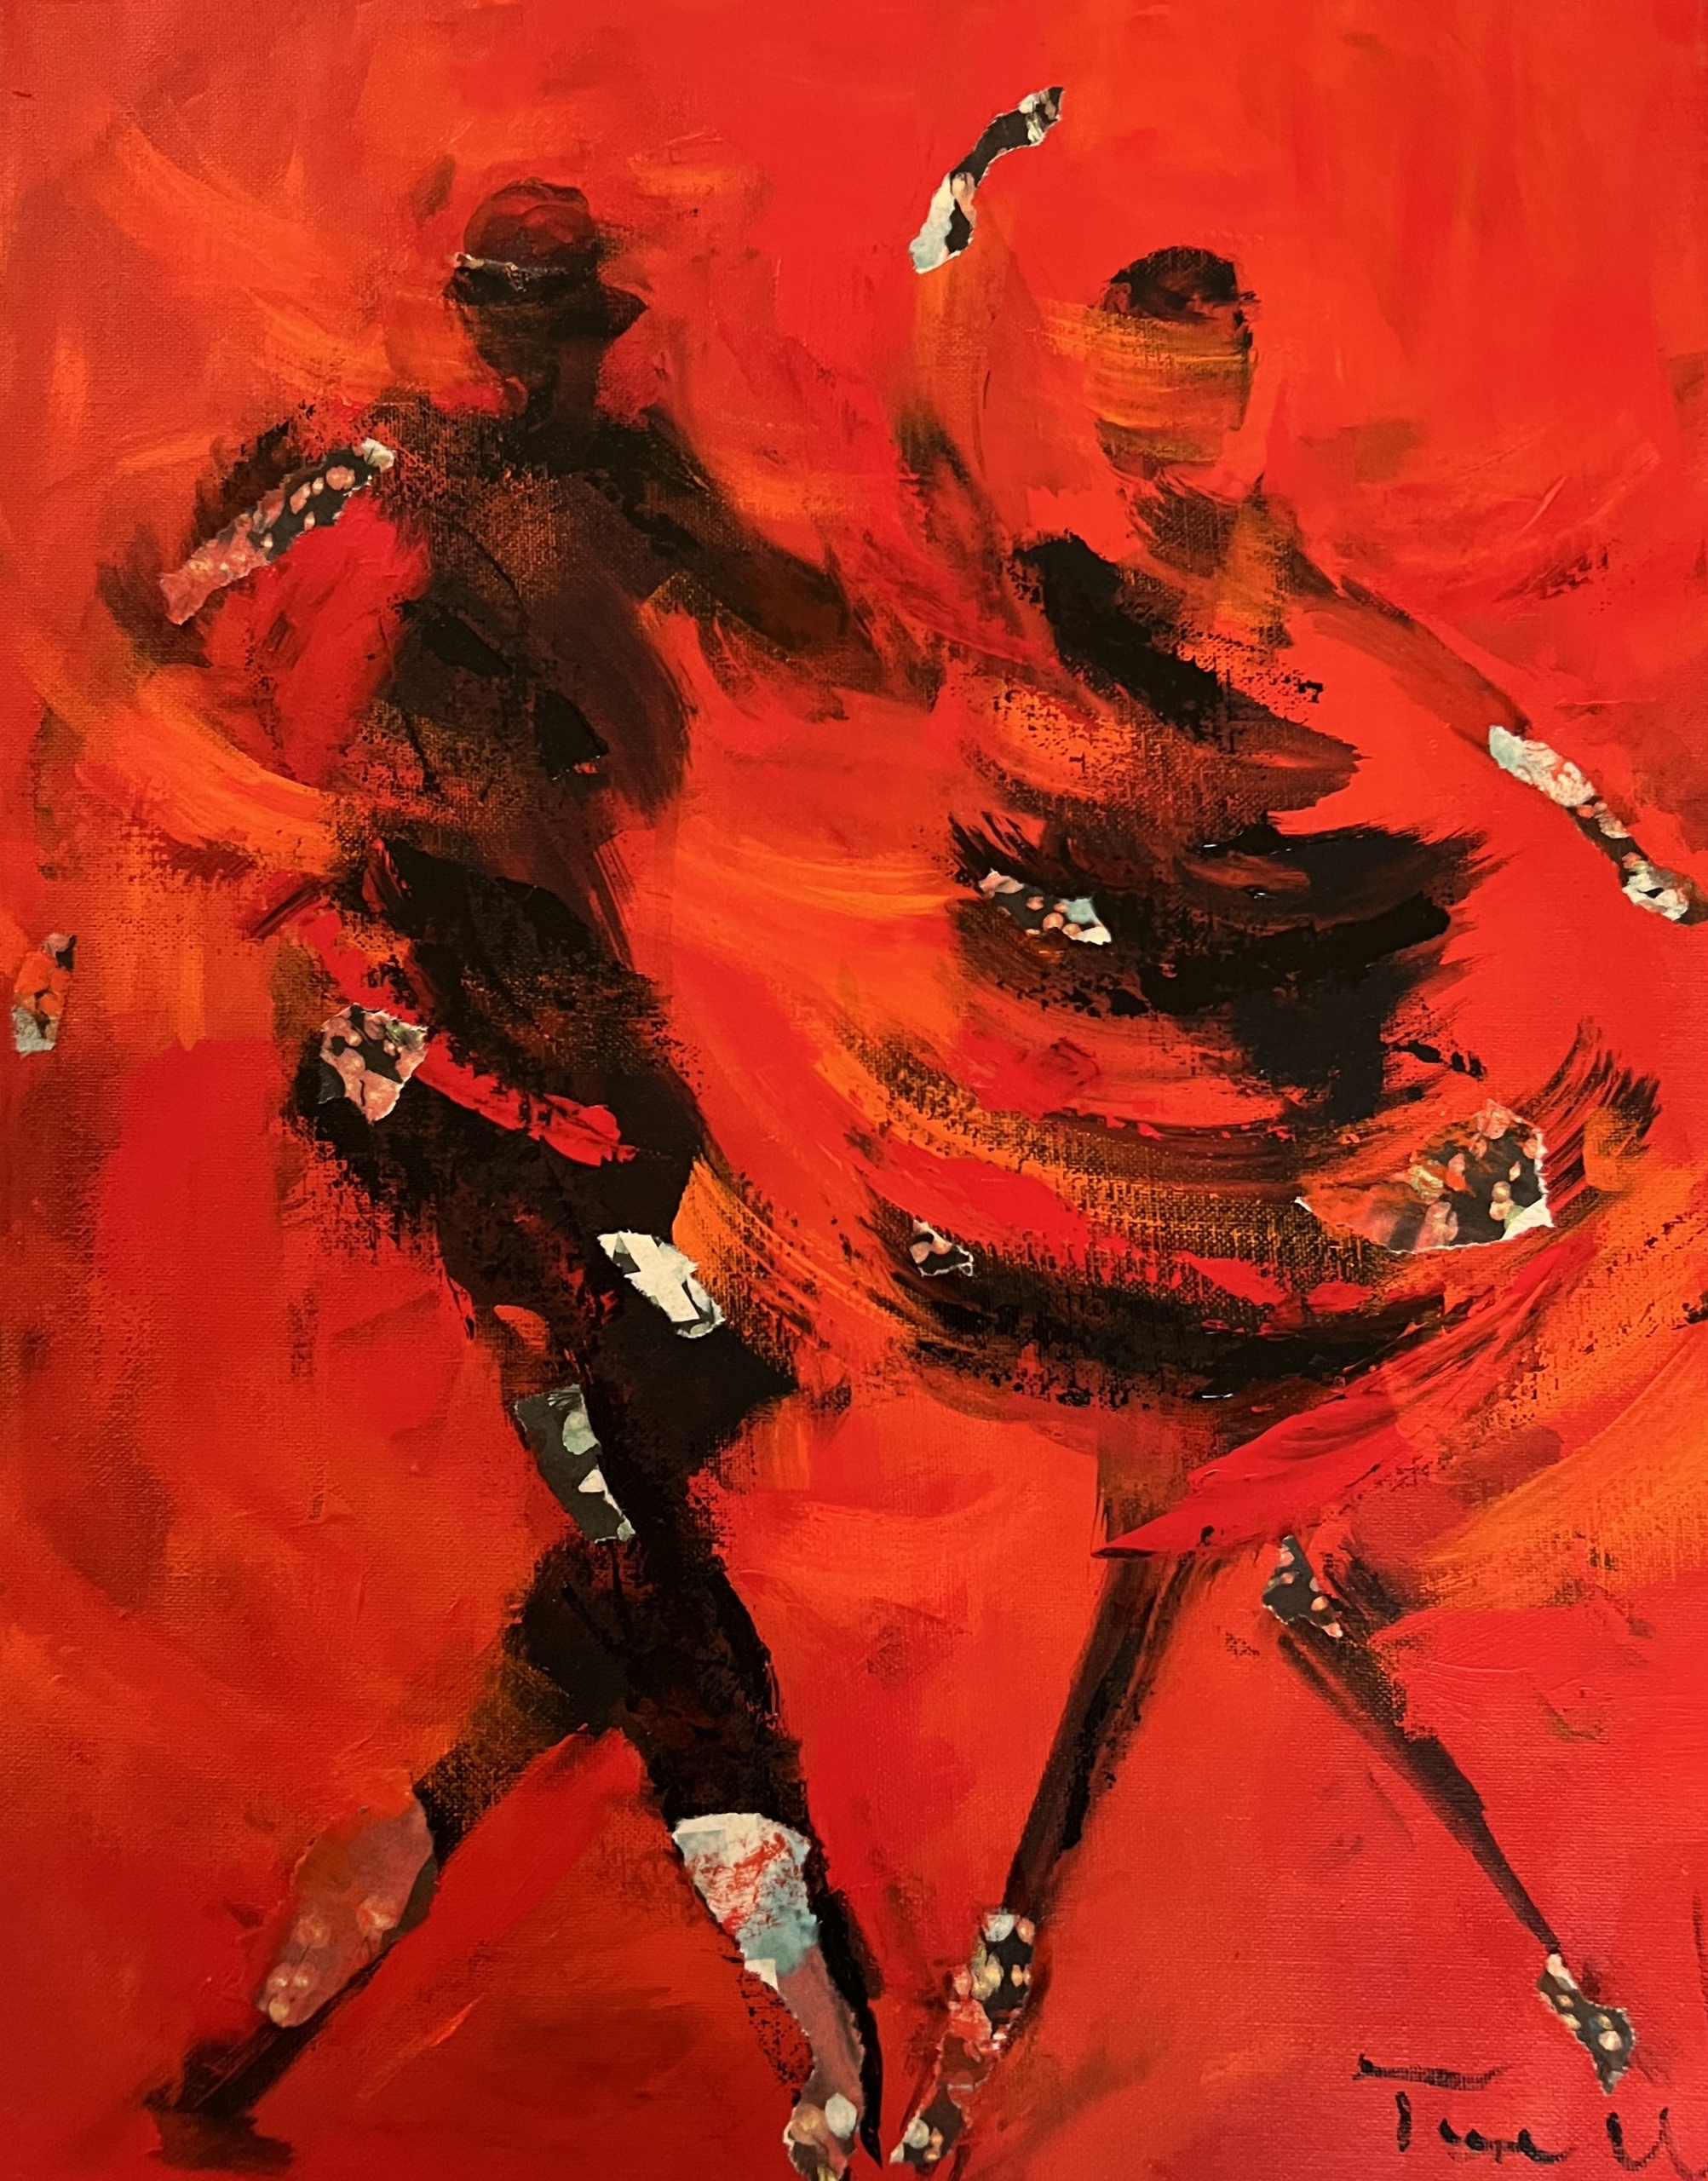 Der er gang i skørterne i dette maleri med to der danser lindyhop eller jitterbug. Maleriet er abstrakt og farverigt samtidig med at man fornemmer de mennesker i bevægelse.